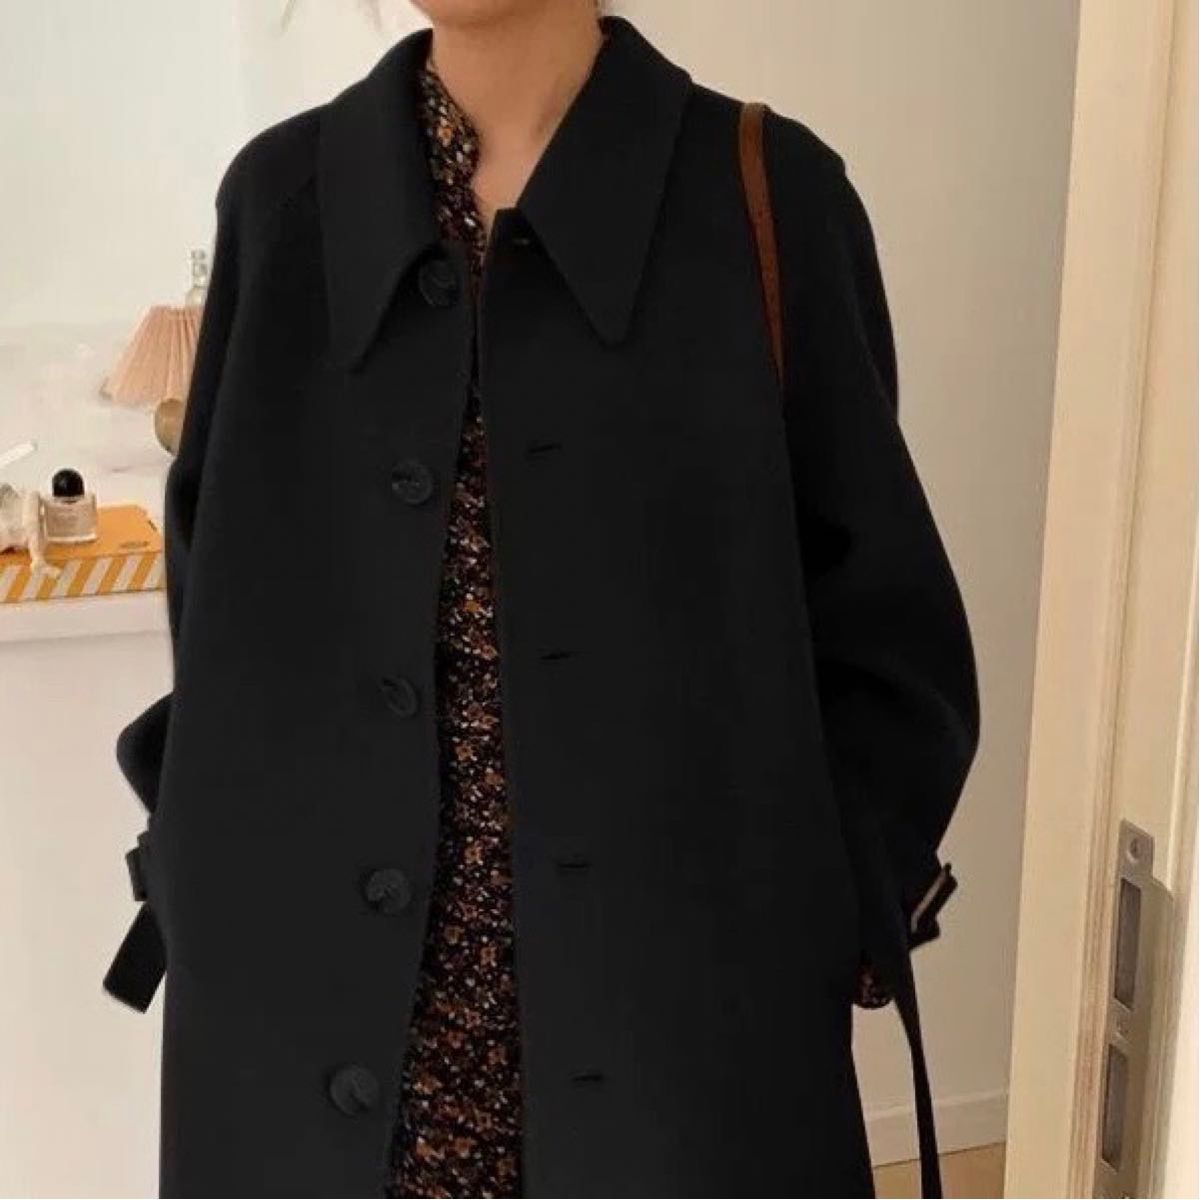 ロングコート コート ブラック 黒 通勤 通学 OL 上品 無地 体型カバー シンプル Lサイズ 大人 可愛い 韓国 ベルト付き